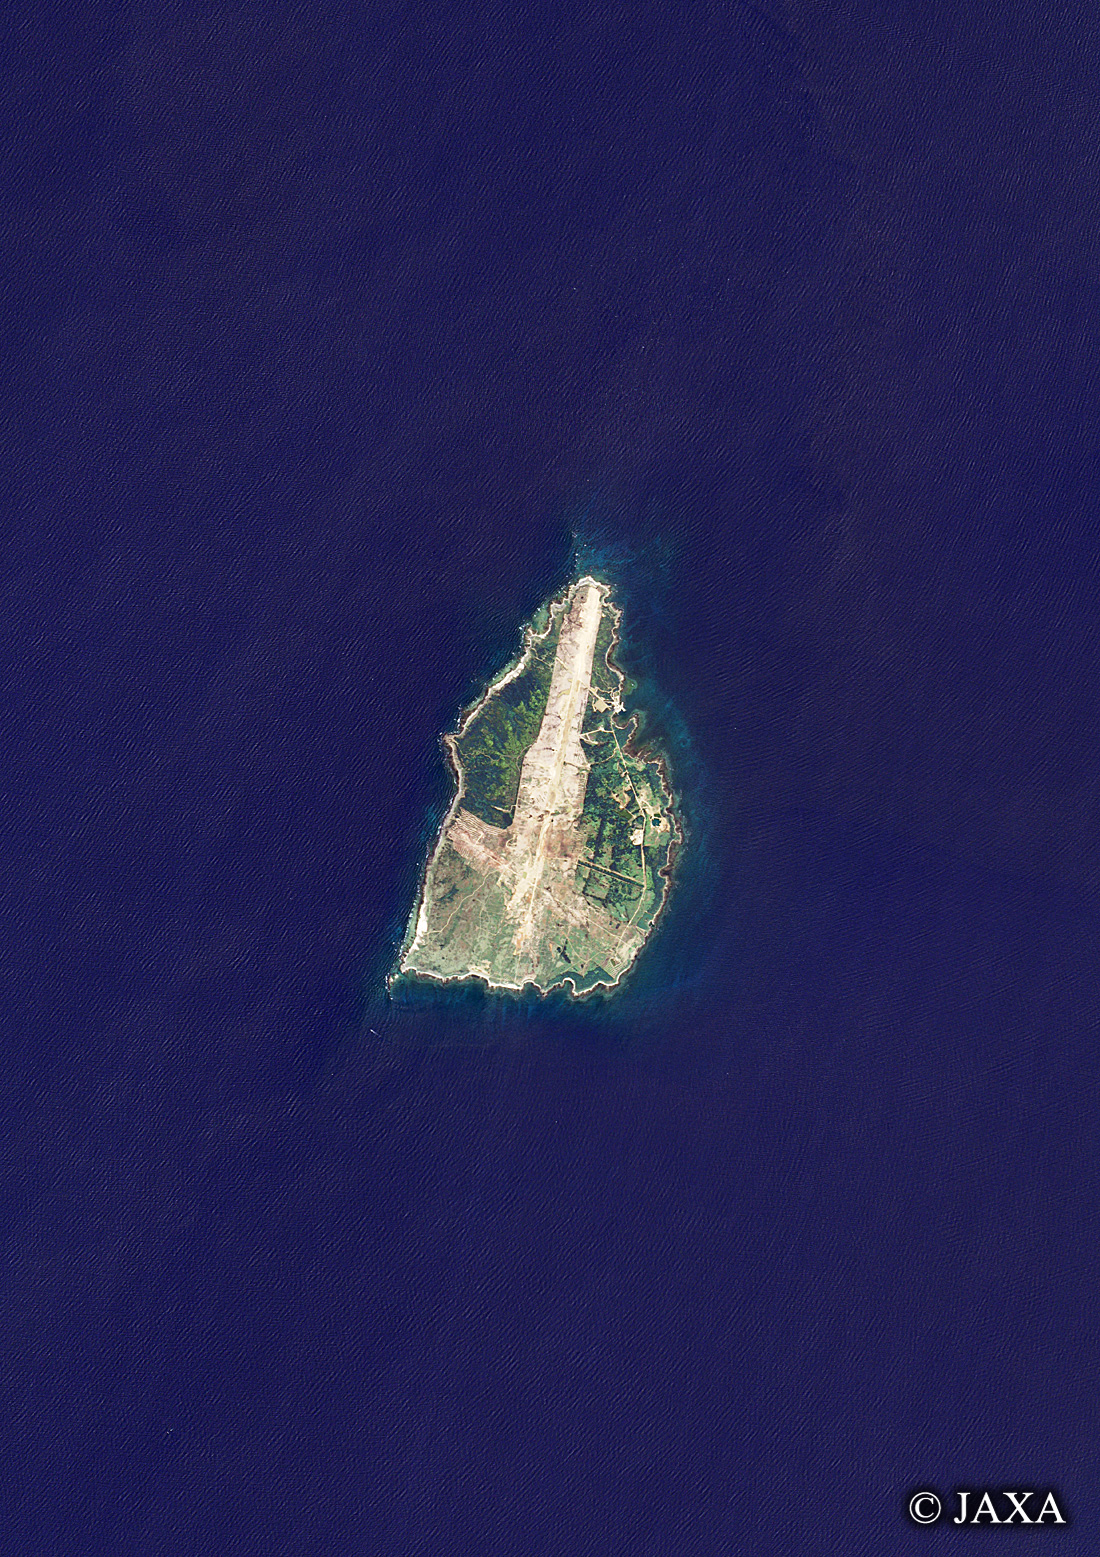 だいちから見た日本の都市 馬毛島:衛星画像